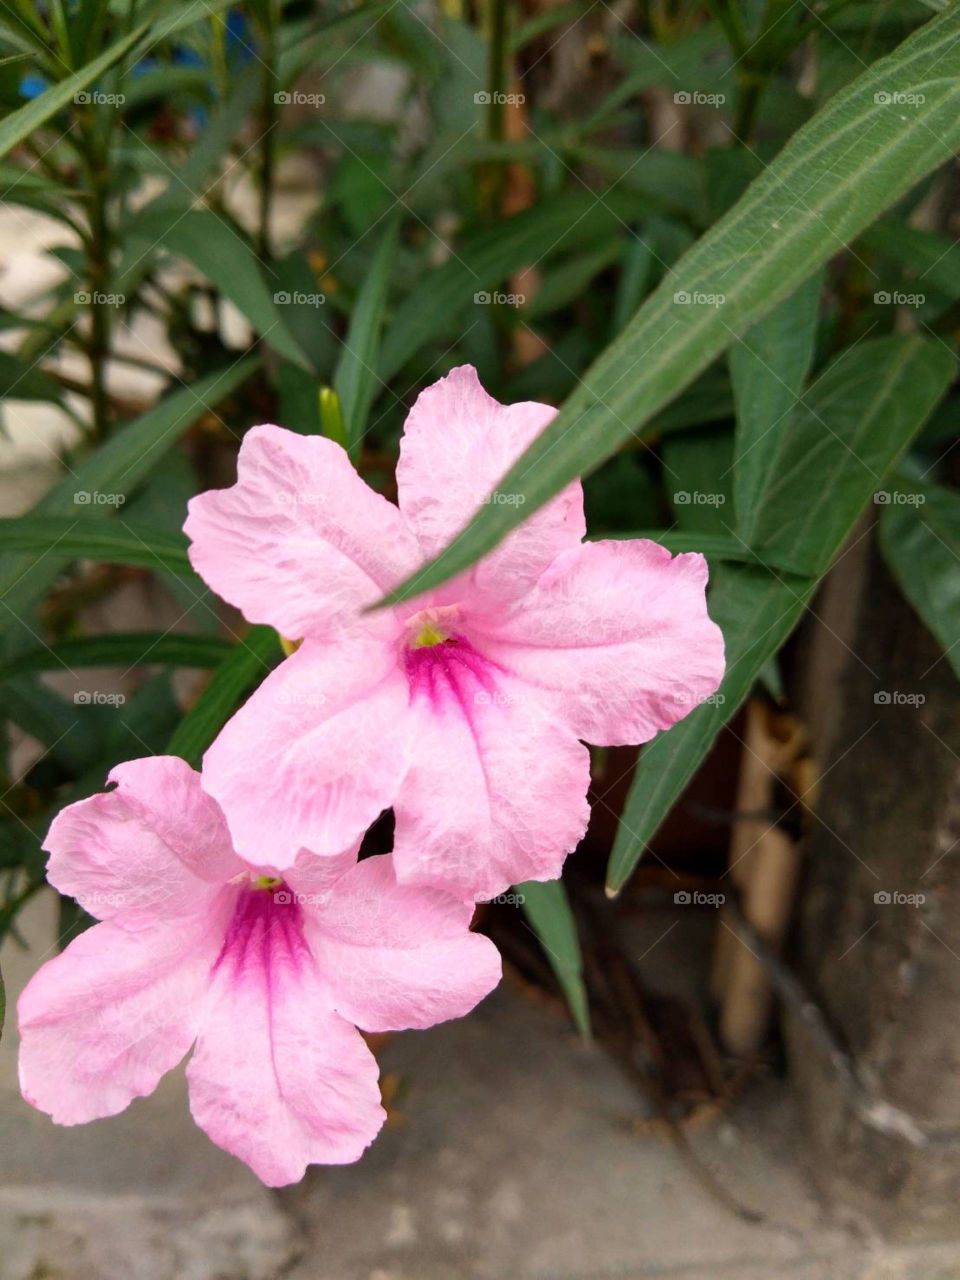 Pink flower in my garden.